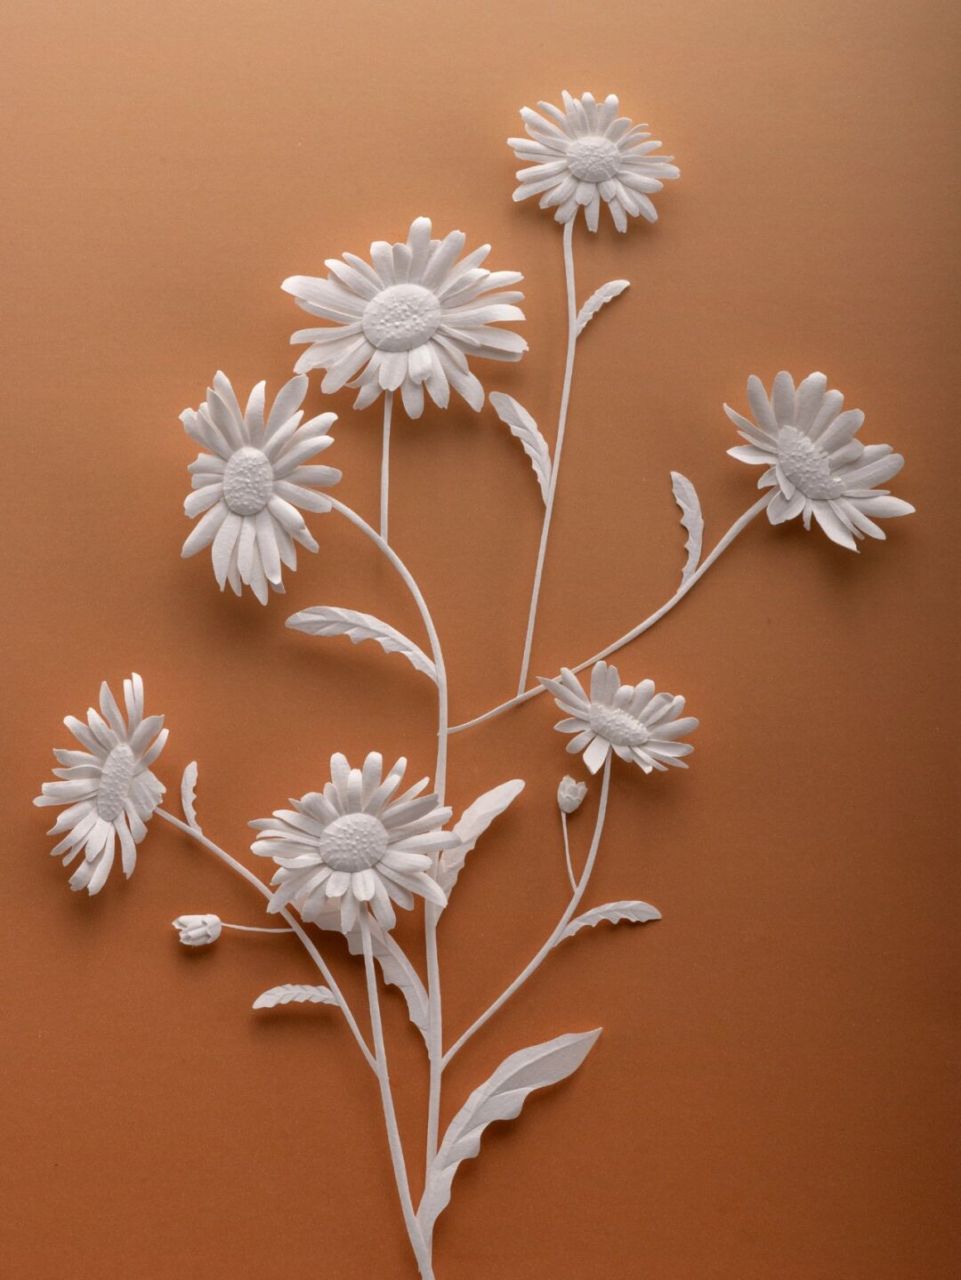 纸浮雕花朵制作步骤图片